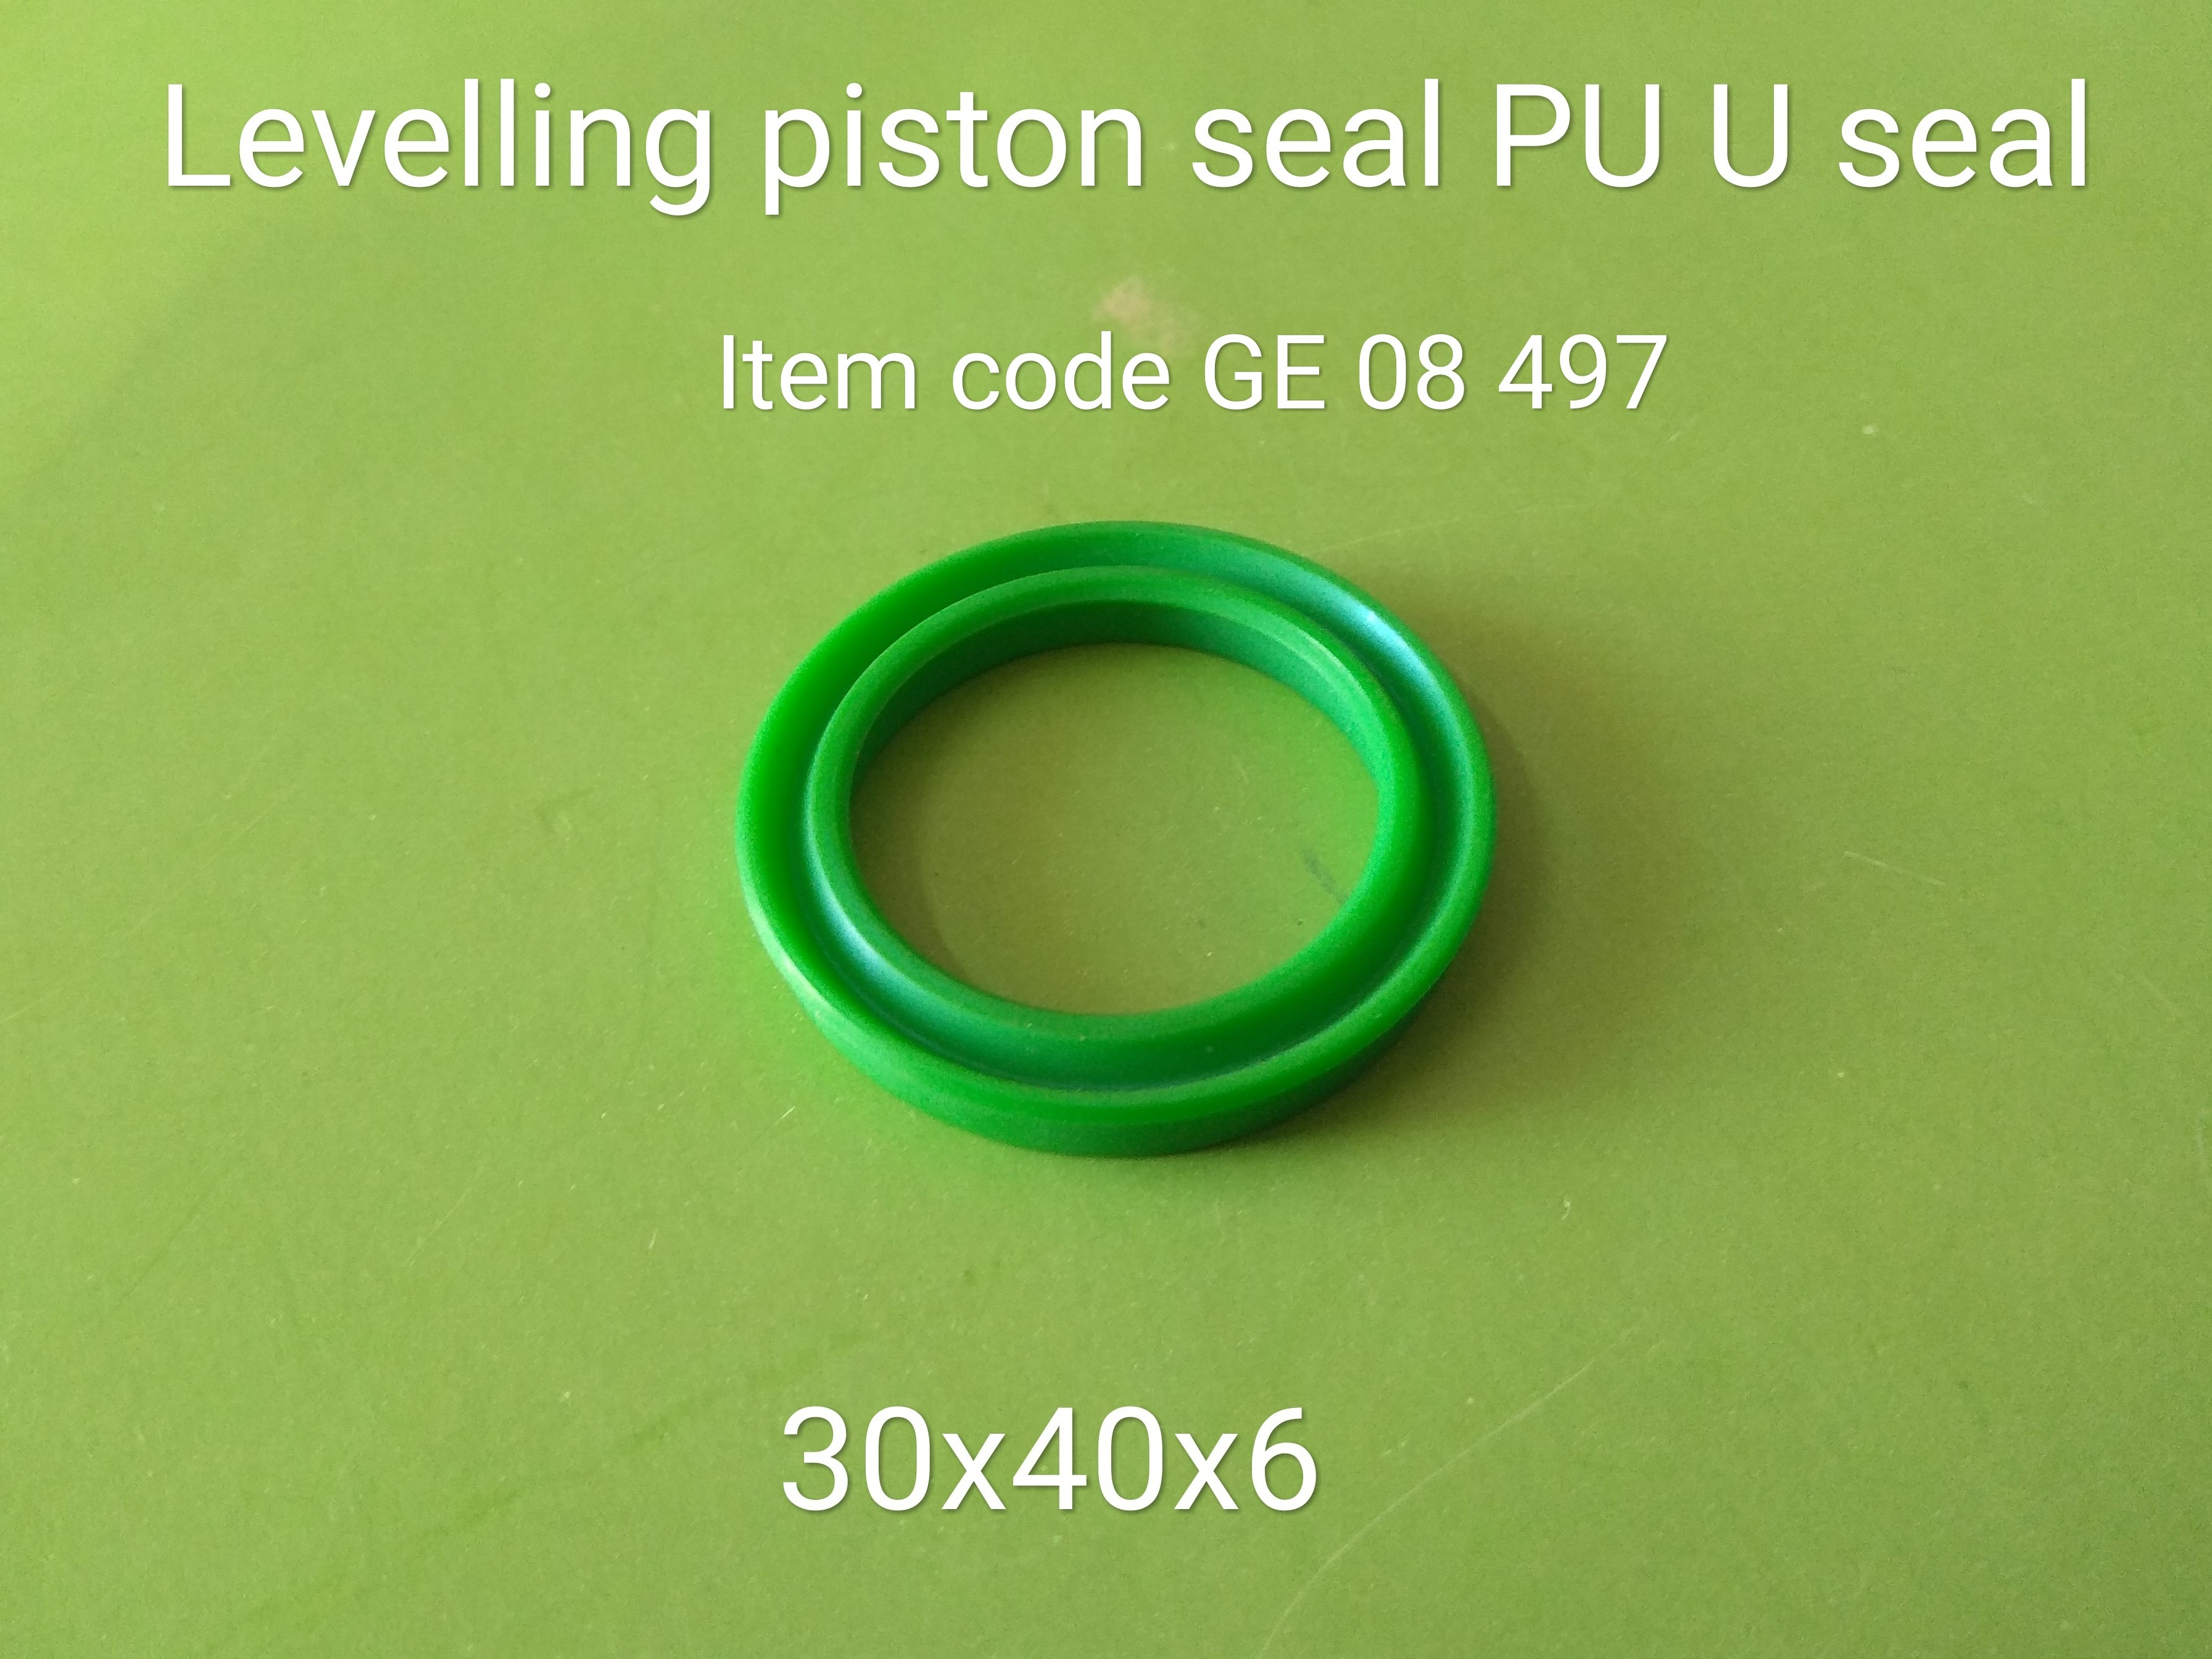 GE_08_497_Levelling_Piston__PU_U_Seal__1_18.jpg